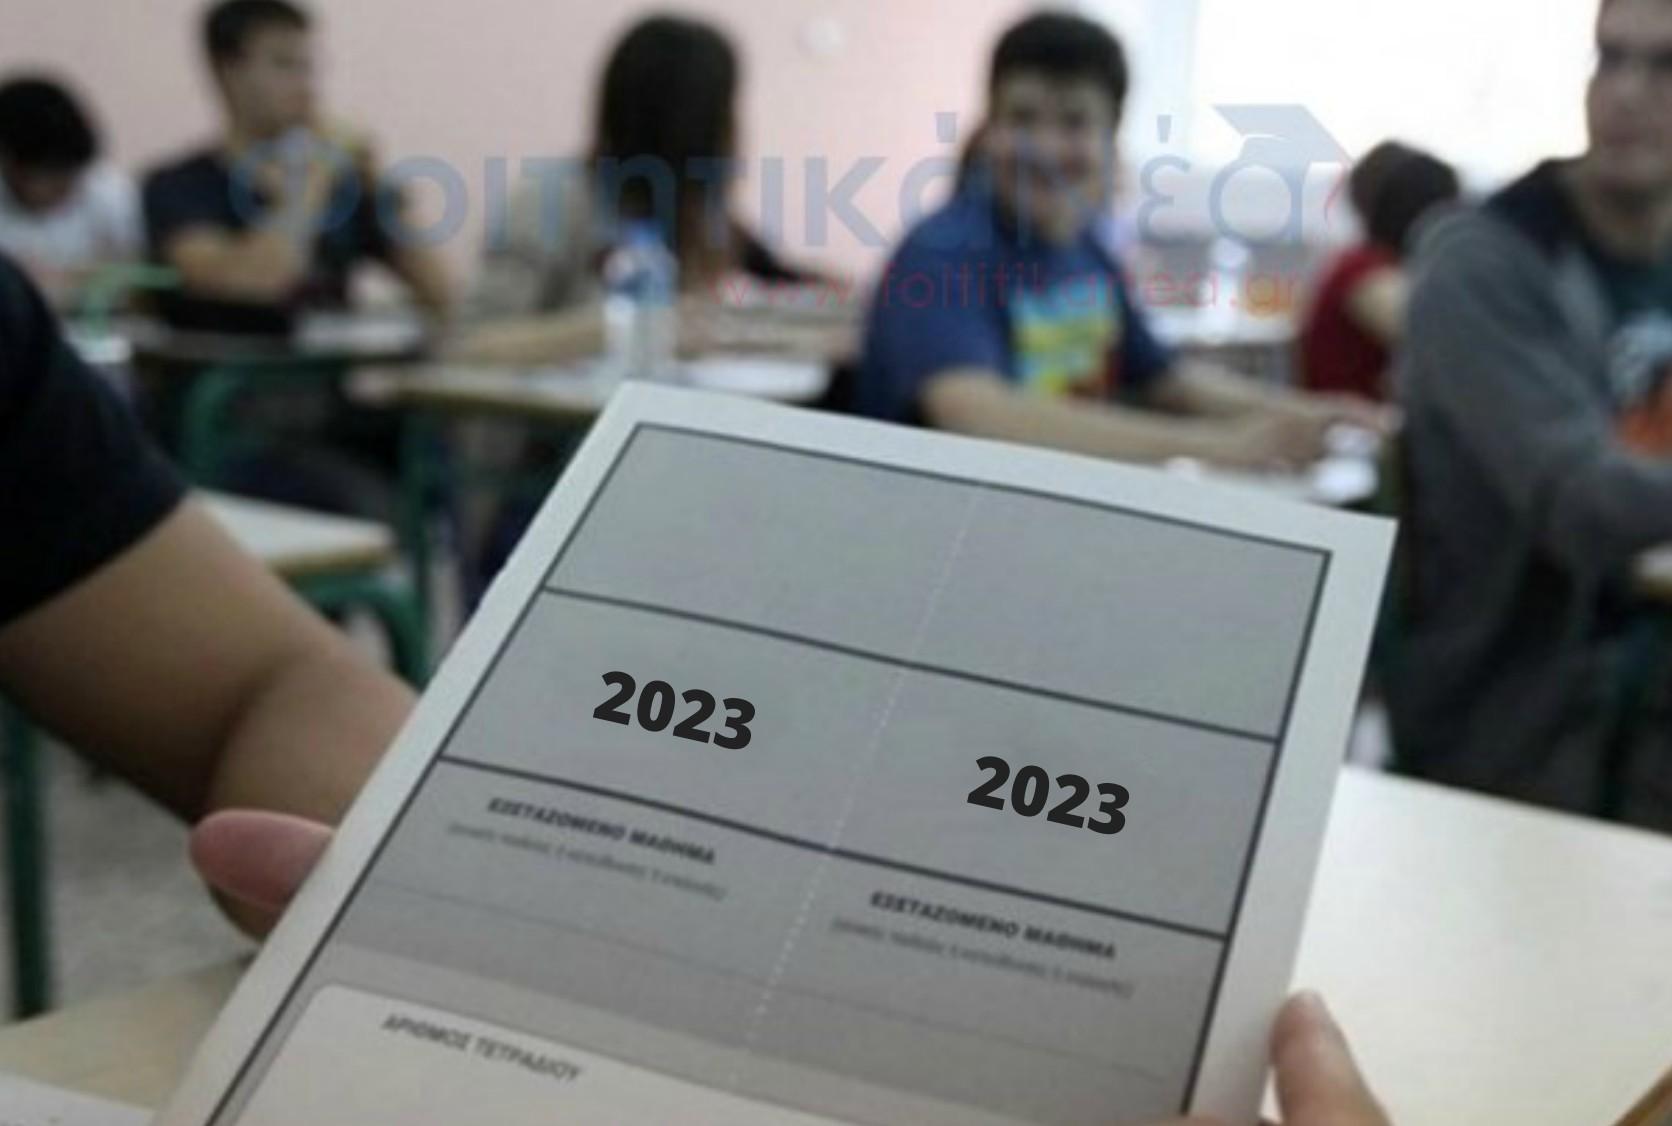 Υποβολή Αίτησης-Δήλωσης Μαθητών και Αποφοίτων για Συμμετοχή στις Πανελλαδικές Εξετάσεις ΕΠΑΛ Έτους 2023